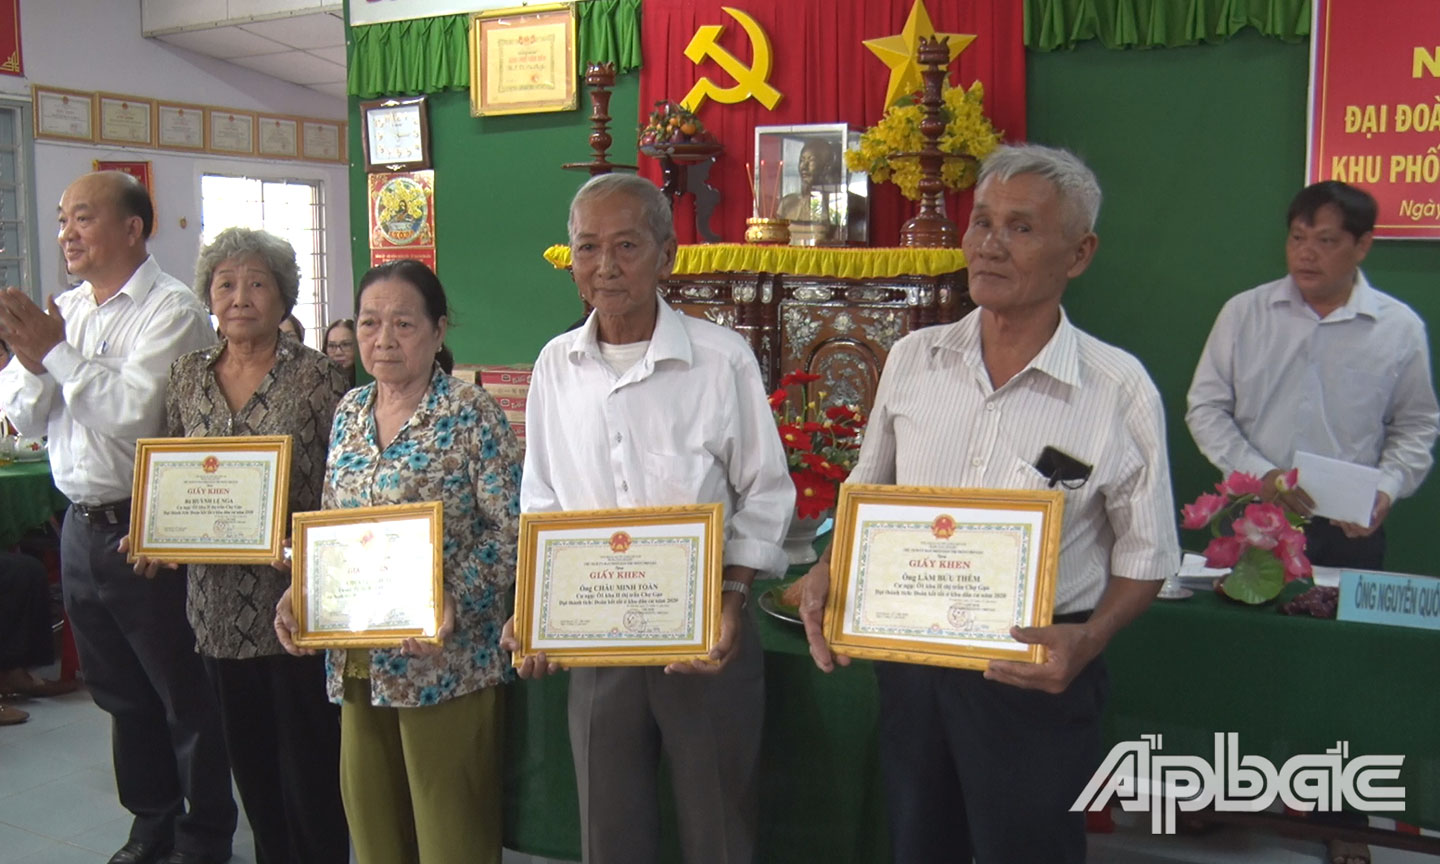 Ông Nguyễn Việt Dũng, Phó Bí thư thị trấn Chợ Gạo trao giấy khen tại ngày hội.